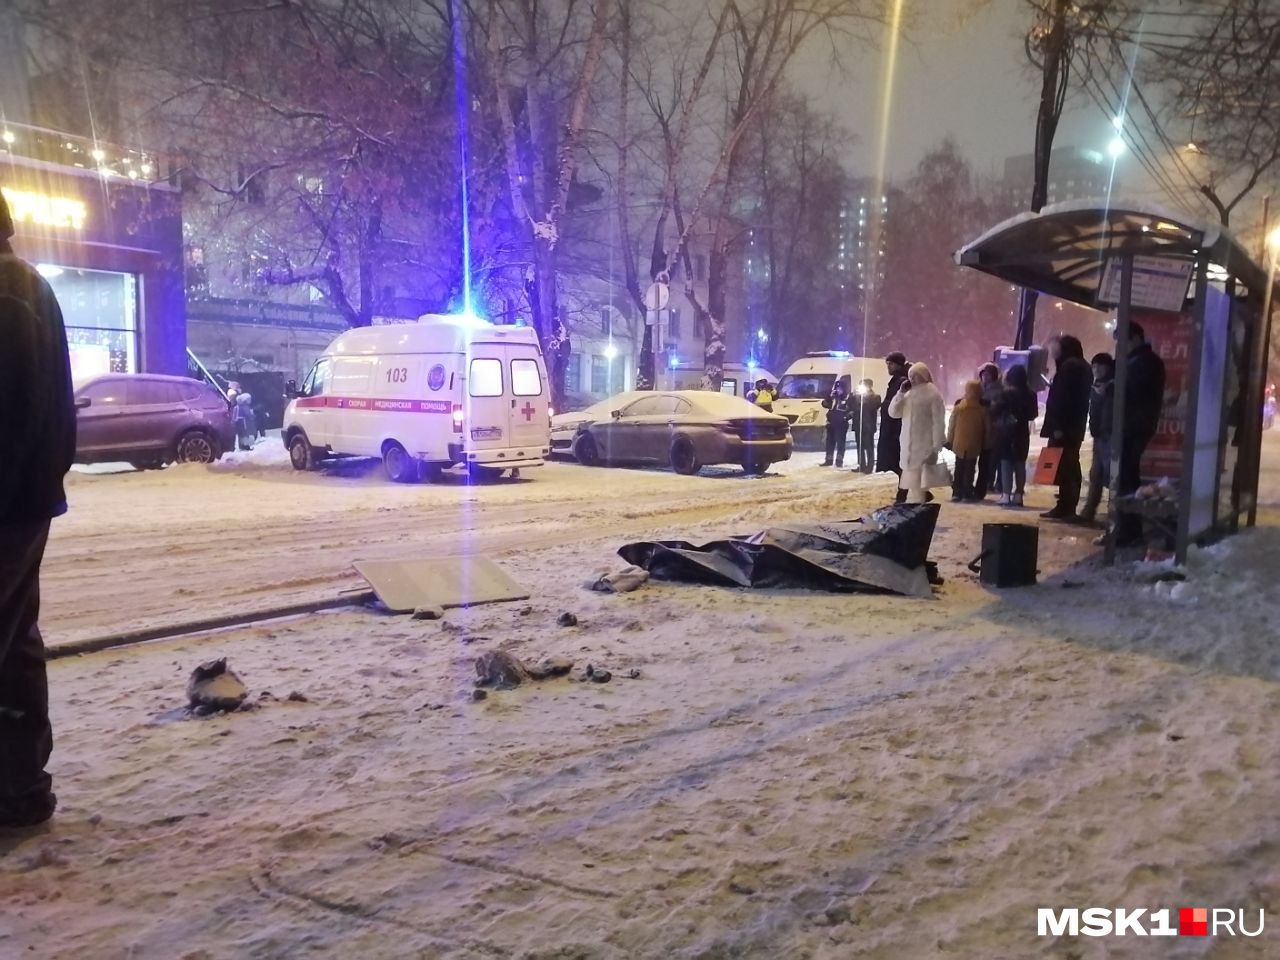 Автомобиль BMW влетел в остановку и сбил трёх пешеходов: ДТП на юге Москвы  на 3-м Павелецком проезде, есть погибший 15 декабря 2022 | msk1.ru —  новости Москвы